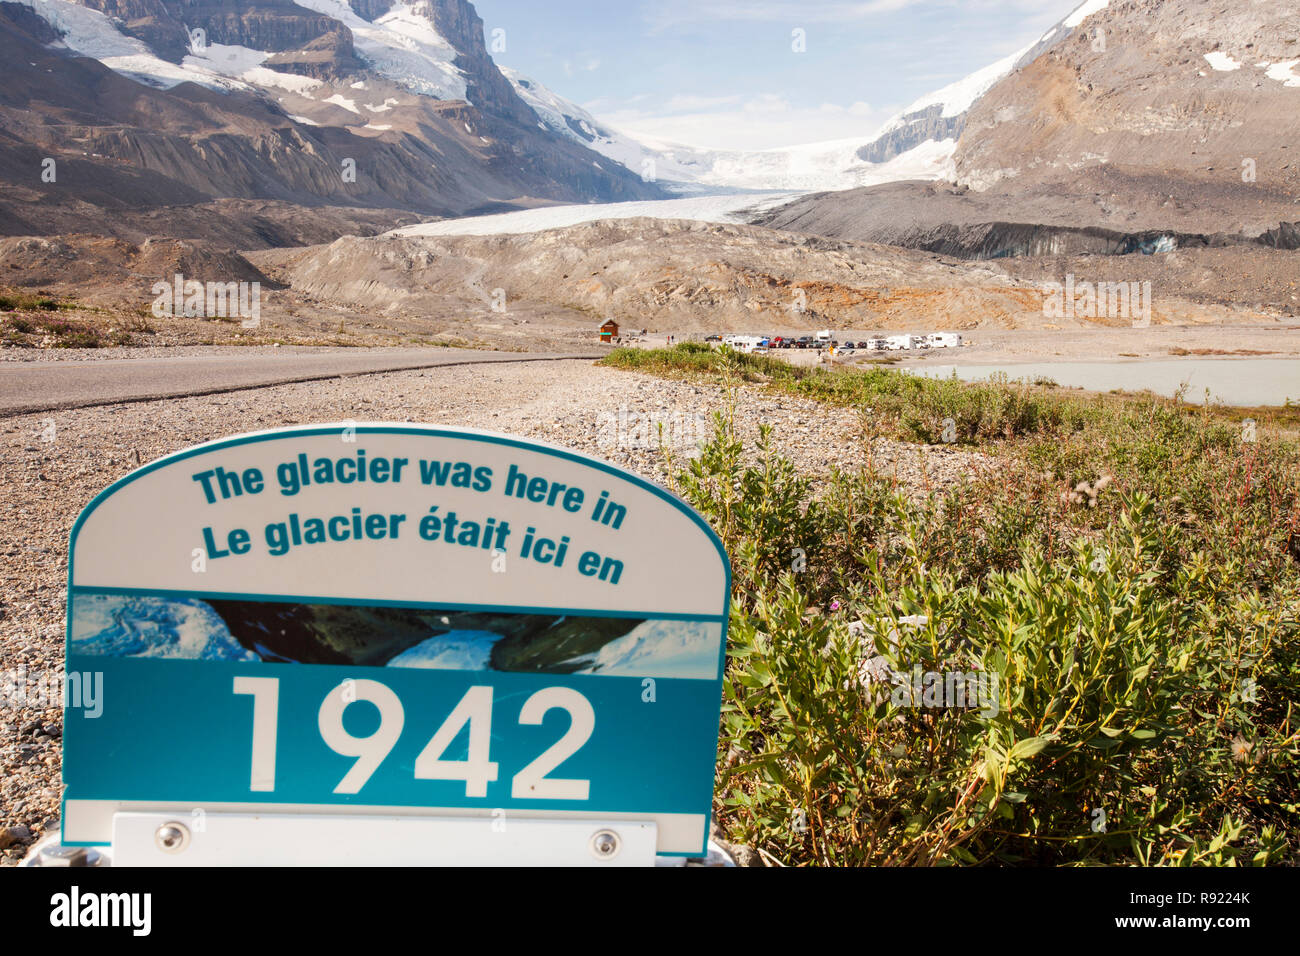 Il Ghiacciaio Athabasca sta svanendo in modo estremamente rapido e ha perso oltre il 60% della sua massa di ghiaccio in meno di 150 anni. Foto Stock